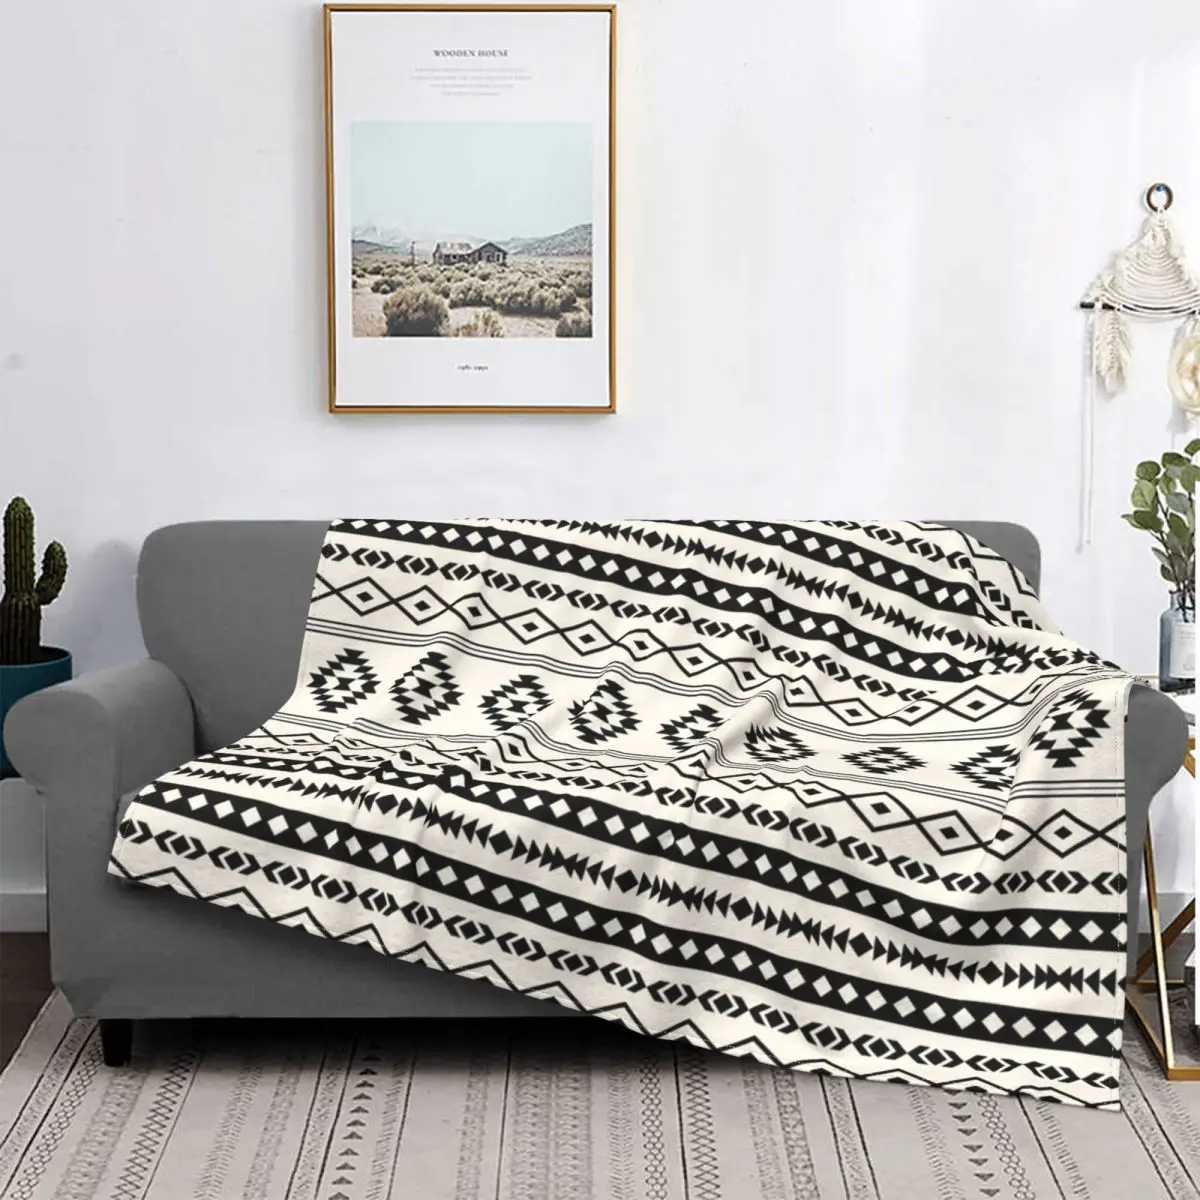 

Богемное Ацтекское одеяло с черными кремовыми мотивами, Фланелевое украшение, очень теплое одеяло для кровати, кушетки, плюшевое тонкое оде...